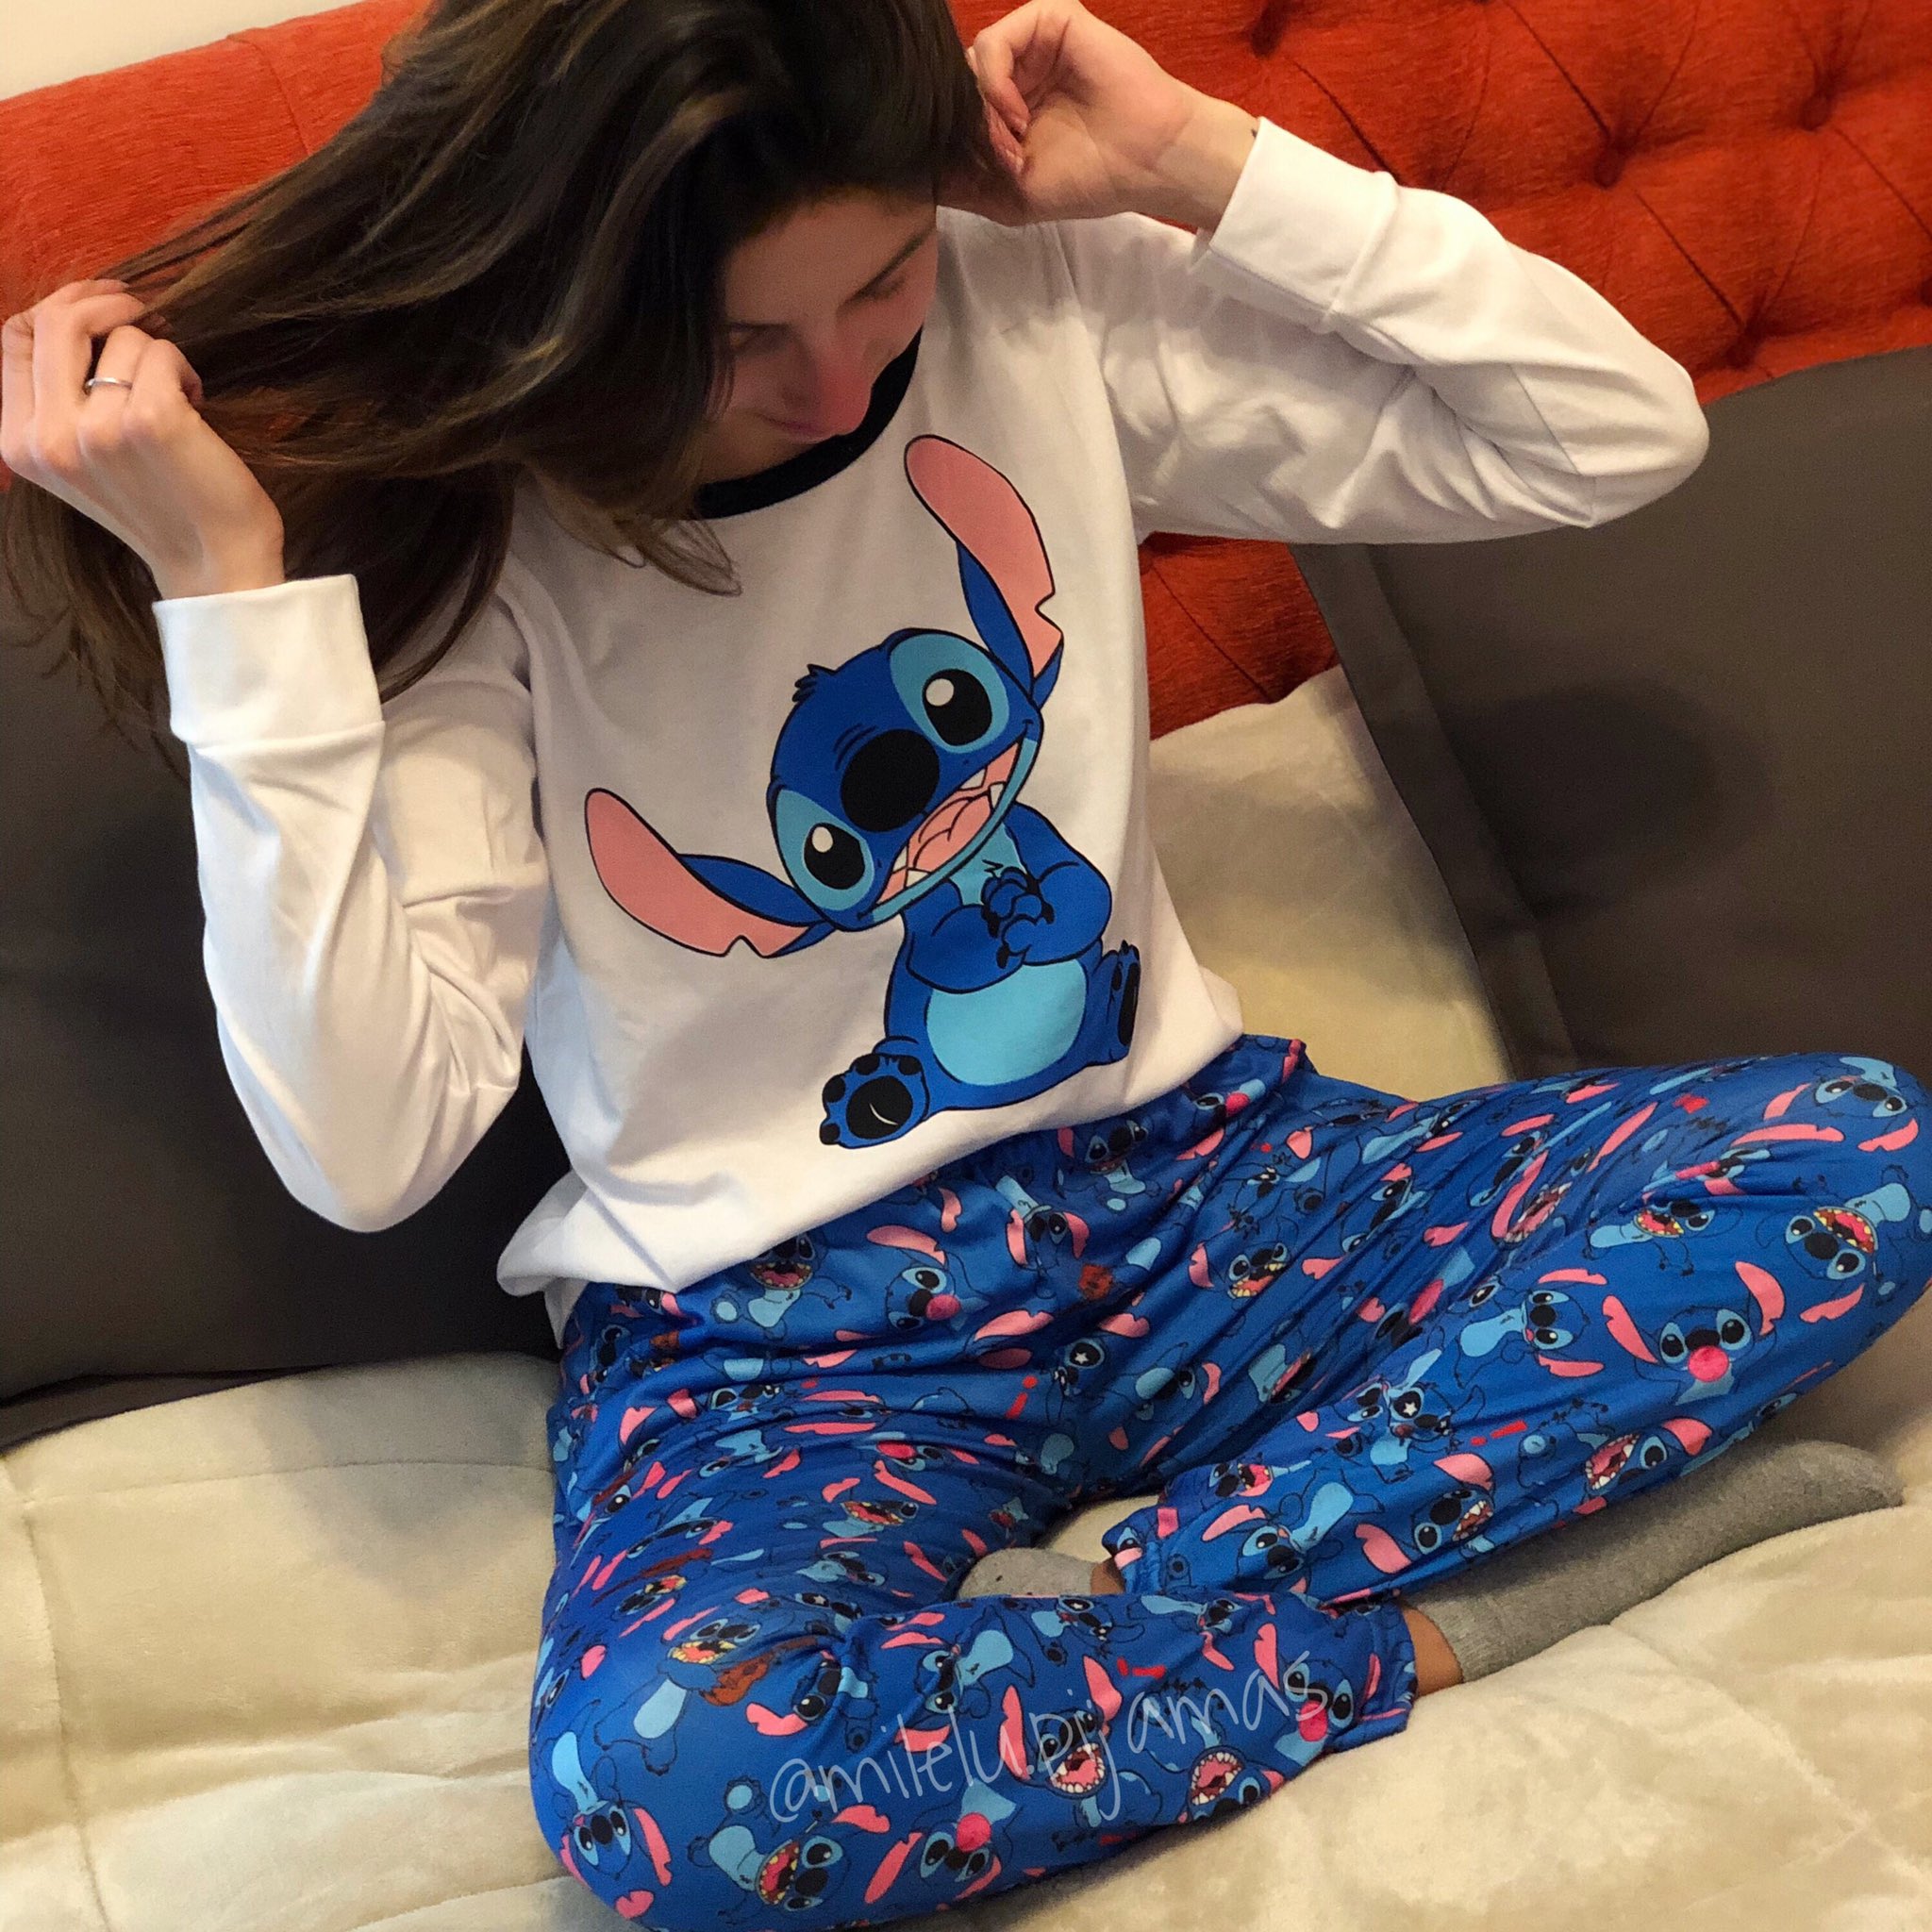 alondra Legítimo estoy sediento milelu.pijamas on Twitter: "No es hermoso??? ❤️ Pijama Stitch manga larga  ❄️ Vienen con pantalón azul o gris 😍 • Precio: $890 . . #pijamas  #hurlingham #invierno #importados #ropa #pijama #stitch  https://t.co/6Cd30lYXyF" / Twitter